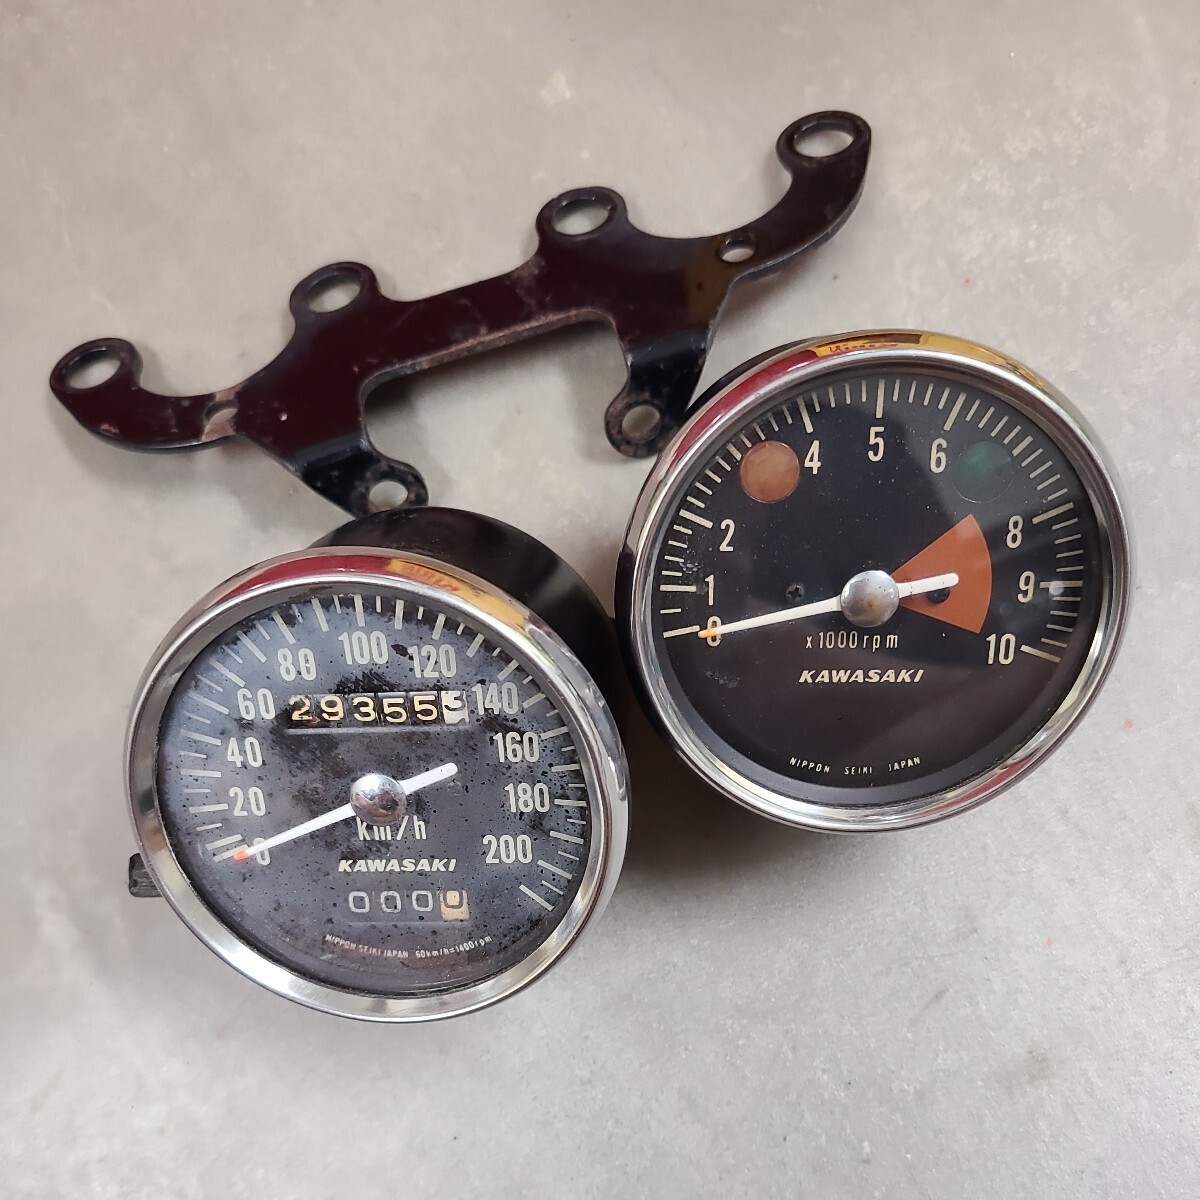  Kawasaki W1S speed meter tachometer meter bracket 